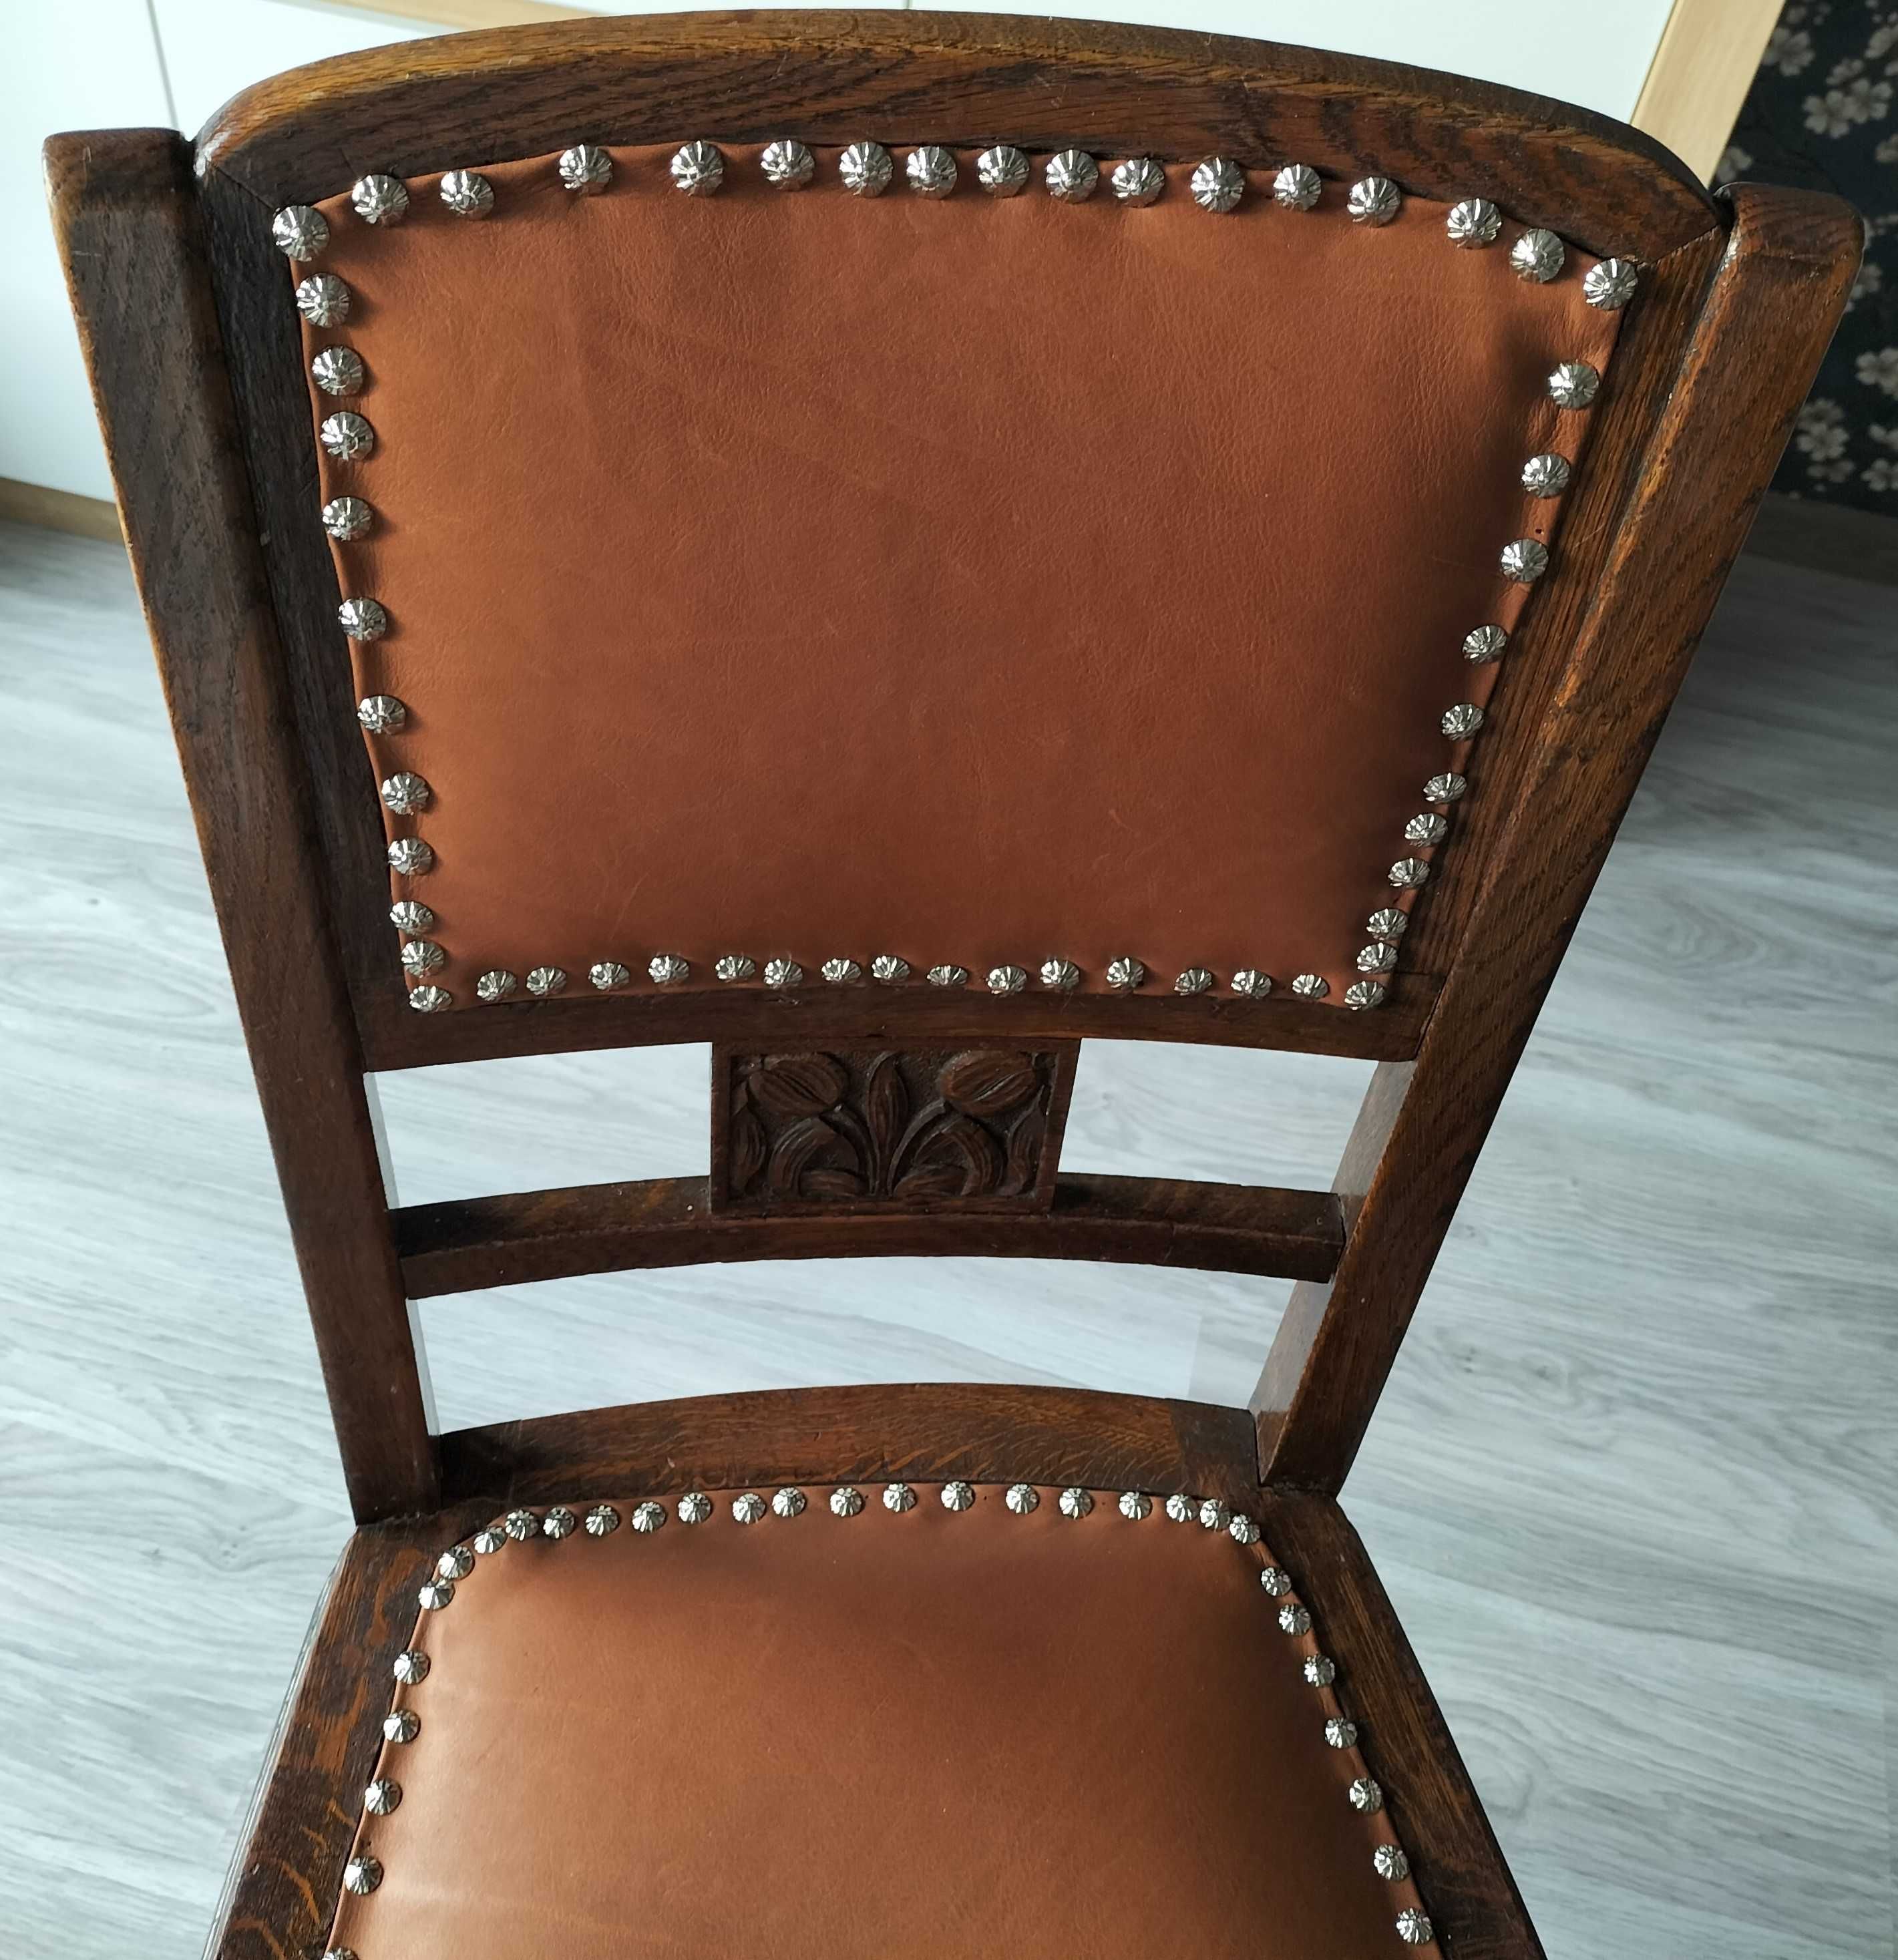 Krzesło w stylu gdańskim, lata 50. odnowione, piękny mebel